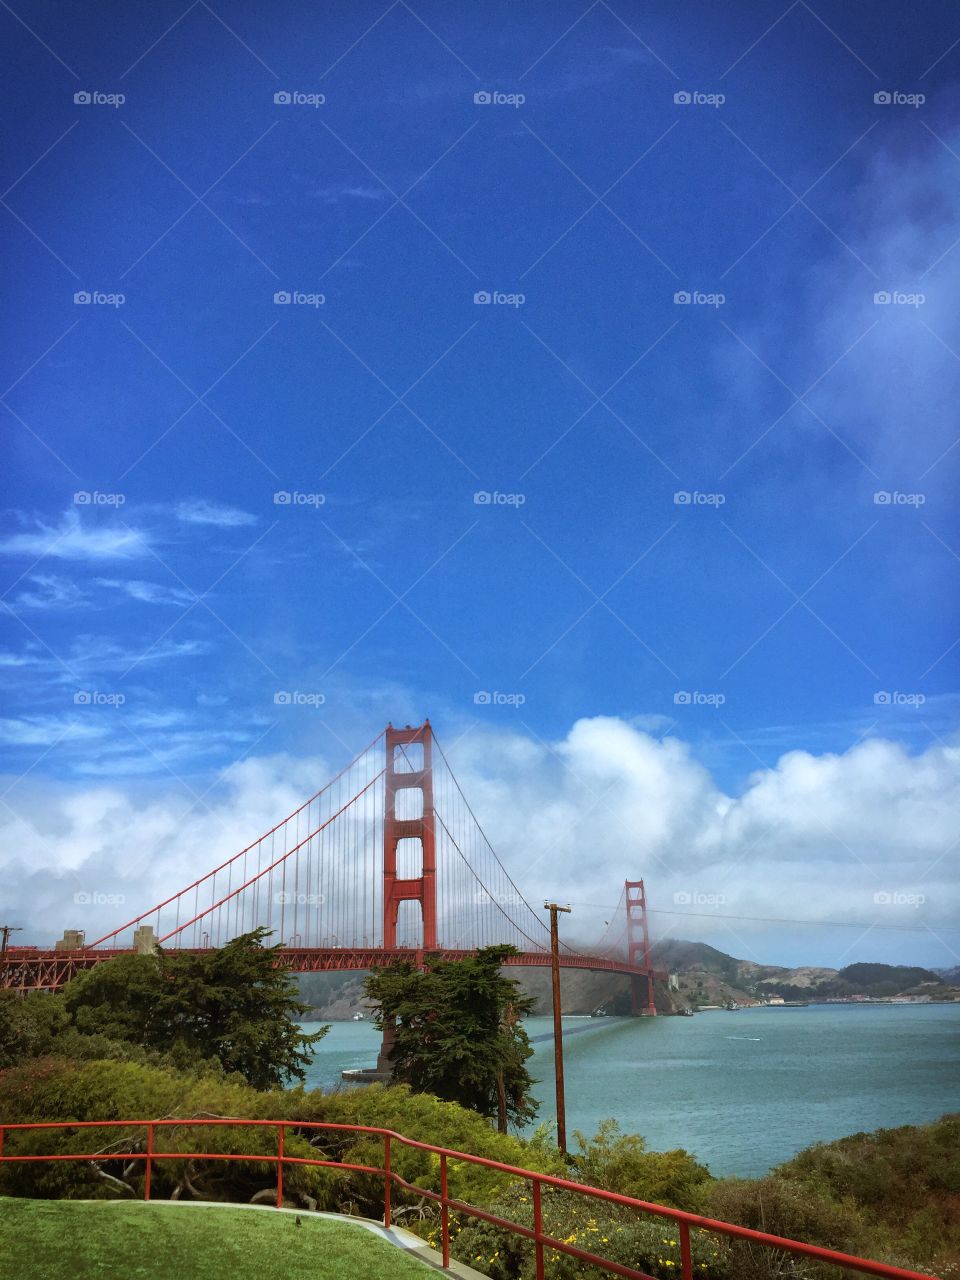 Golden Gate Bridge in fog